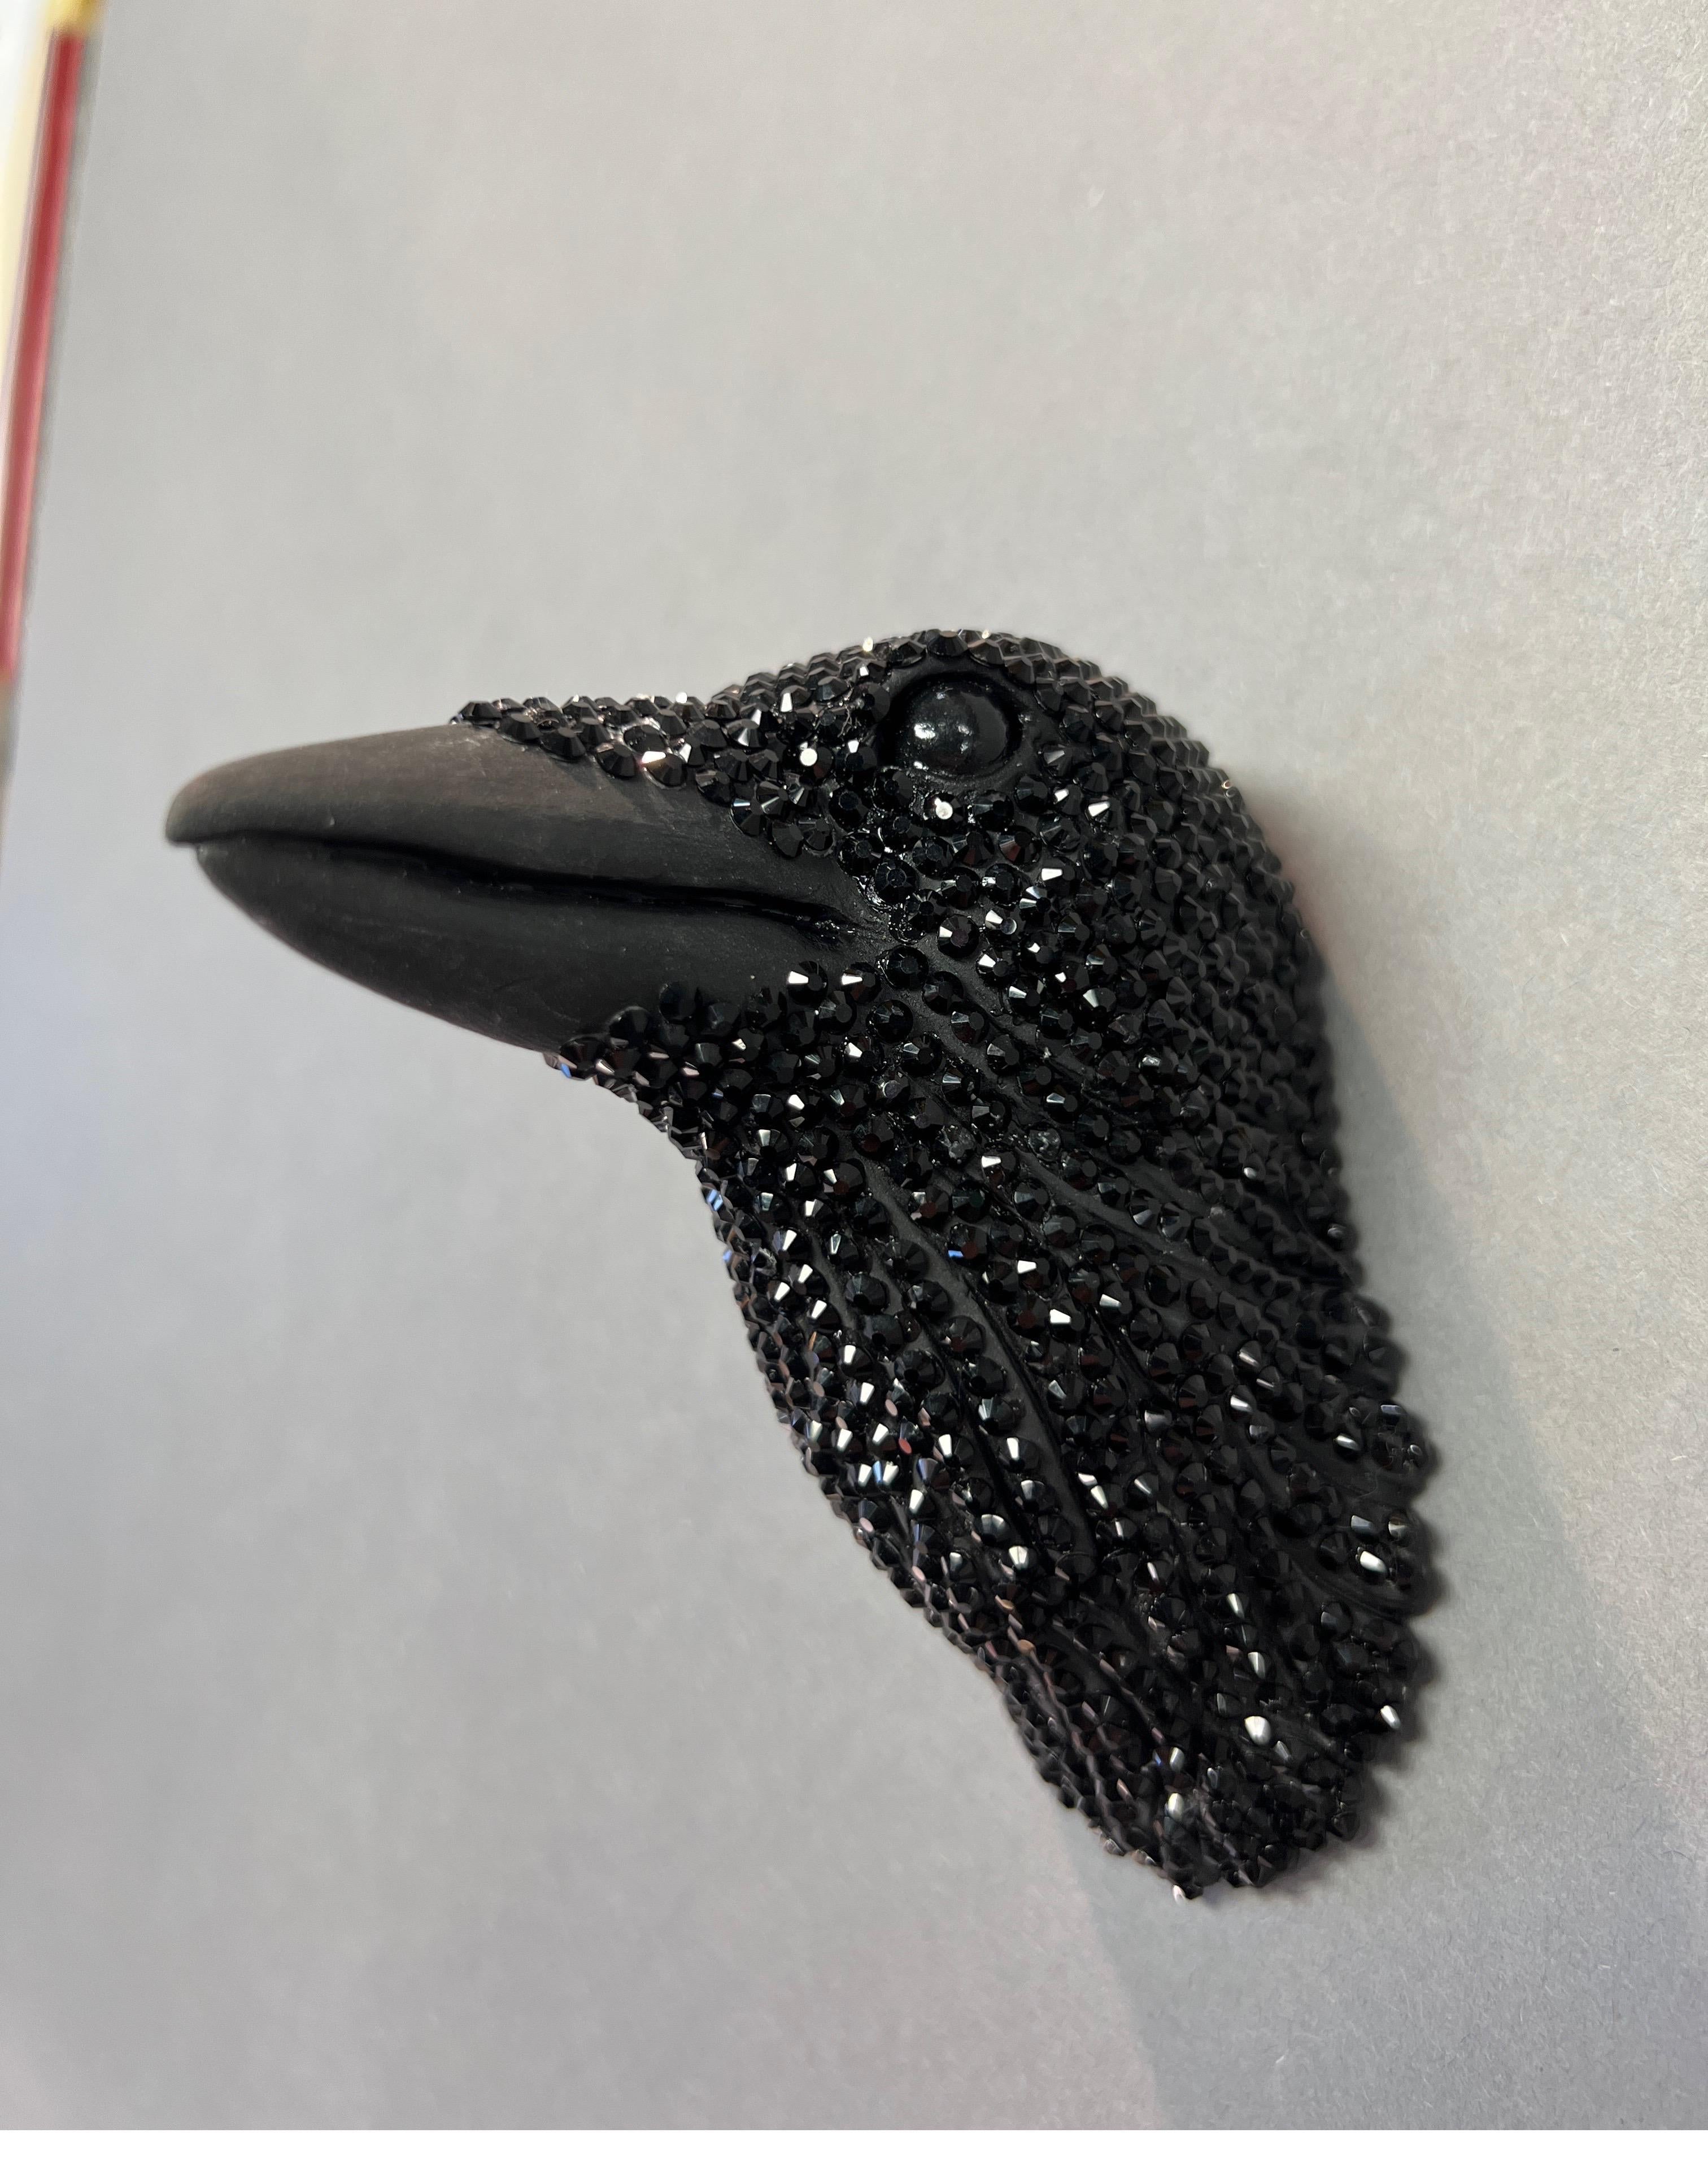 Keramik, Swarovski-Kristalle, Wandskulptur eines Crow Head – Sculpture von Karla Walter